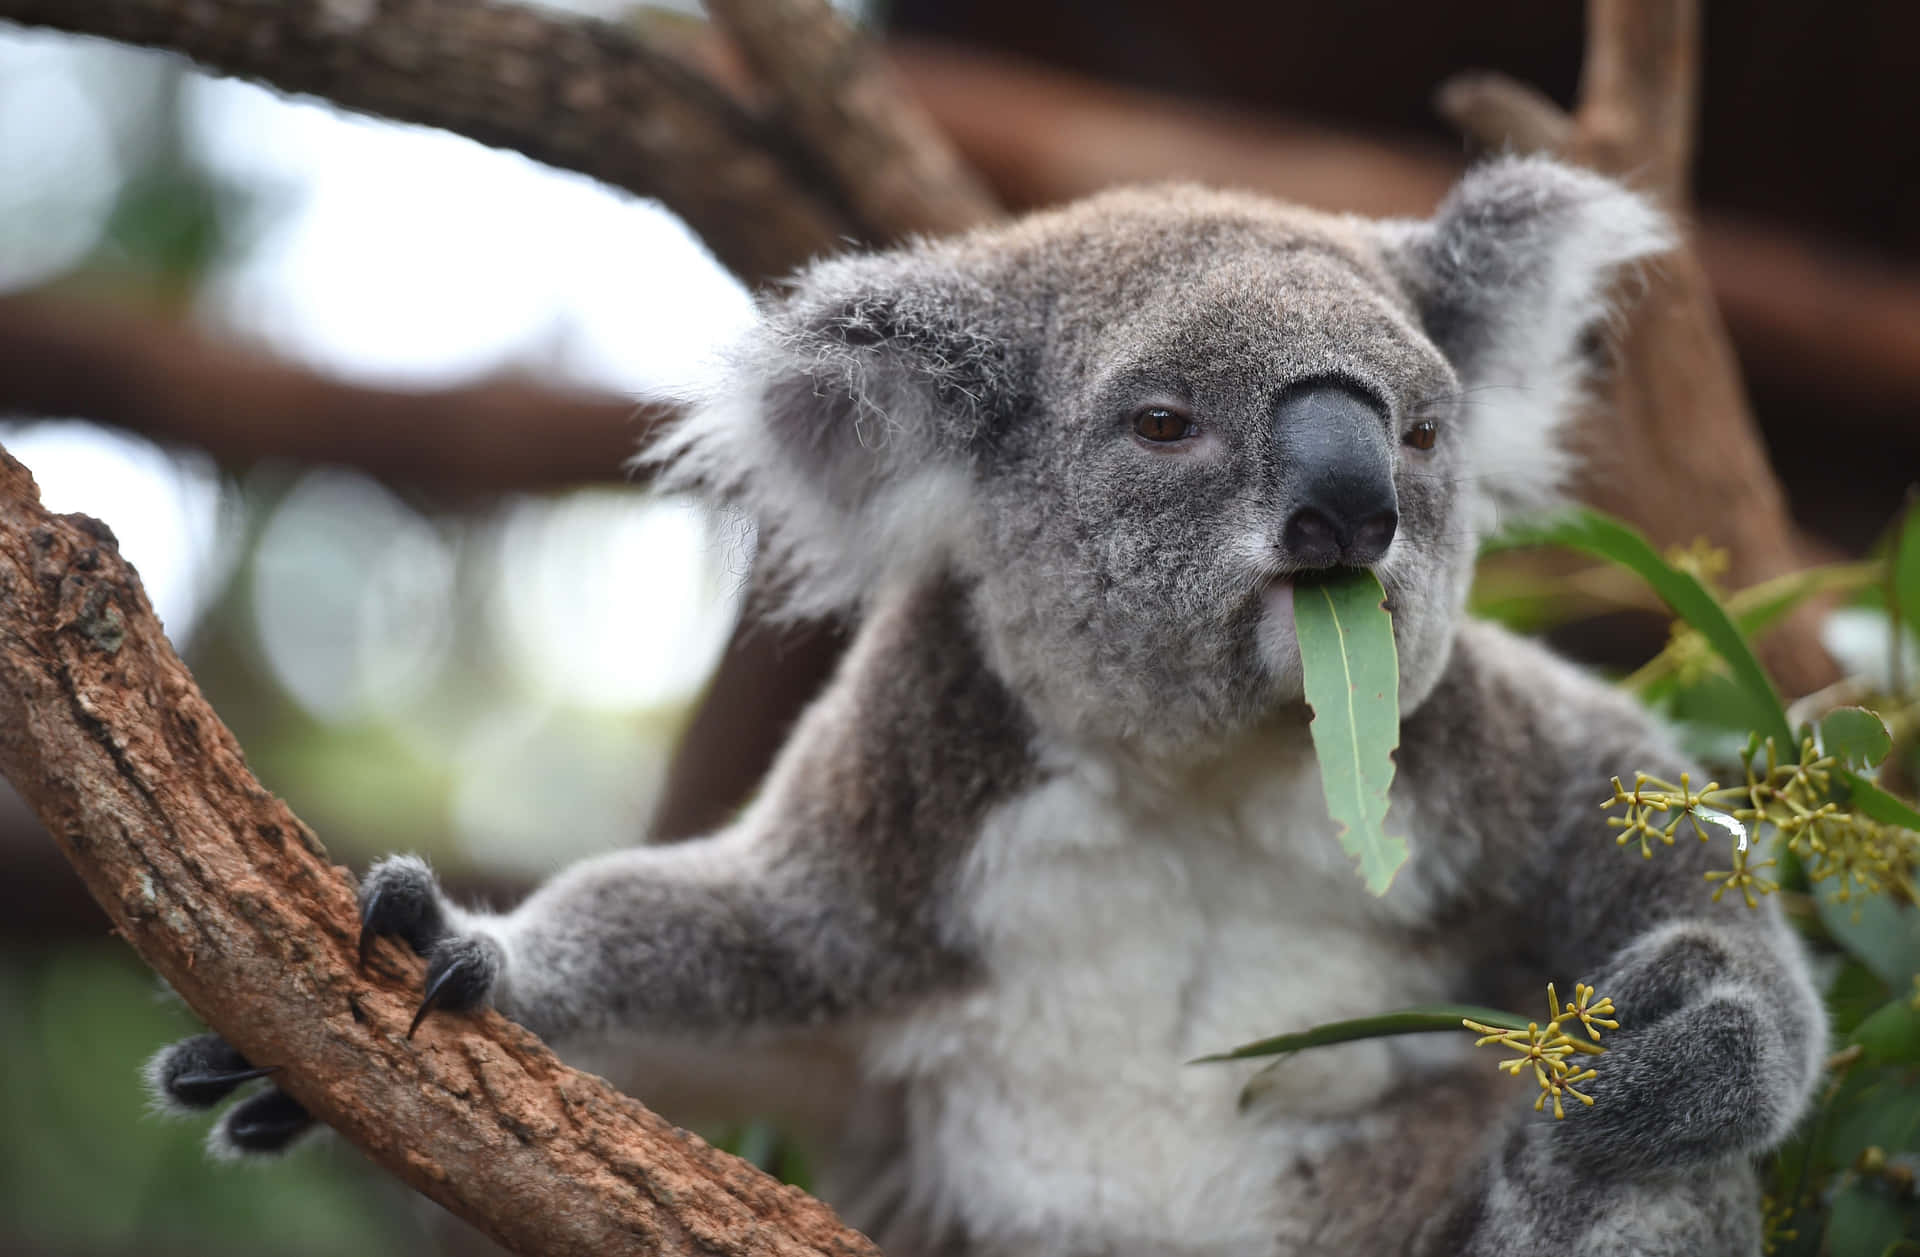 Etnærbillede Af En Koalabjørn, Puttet Op Ad Et Trægrene